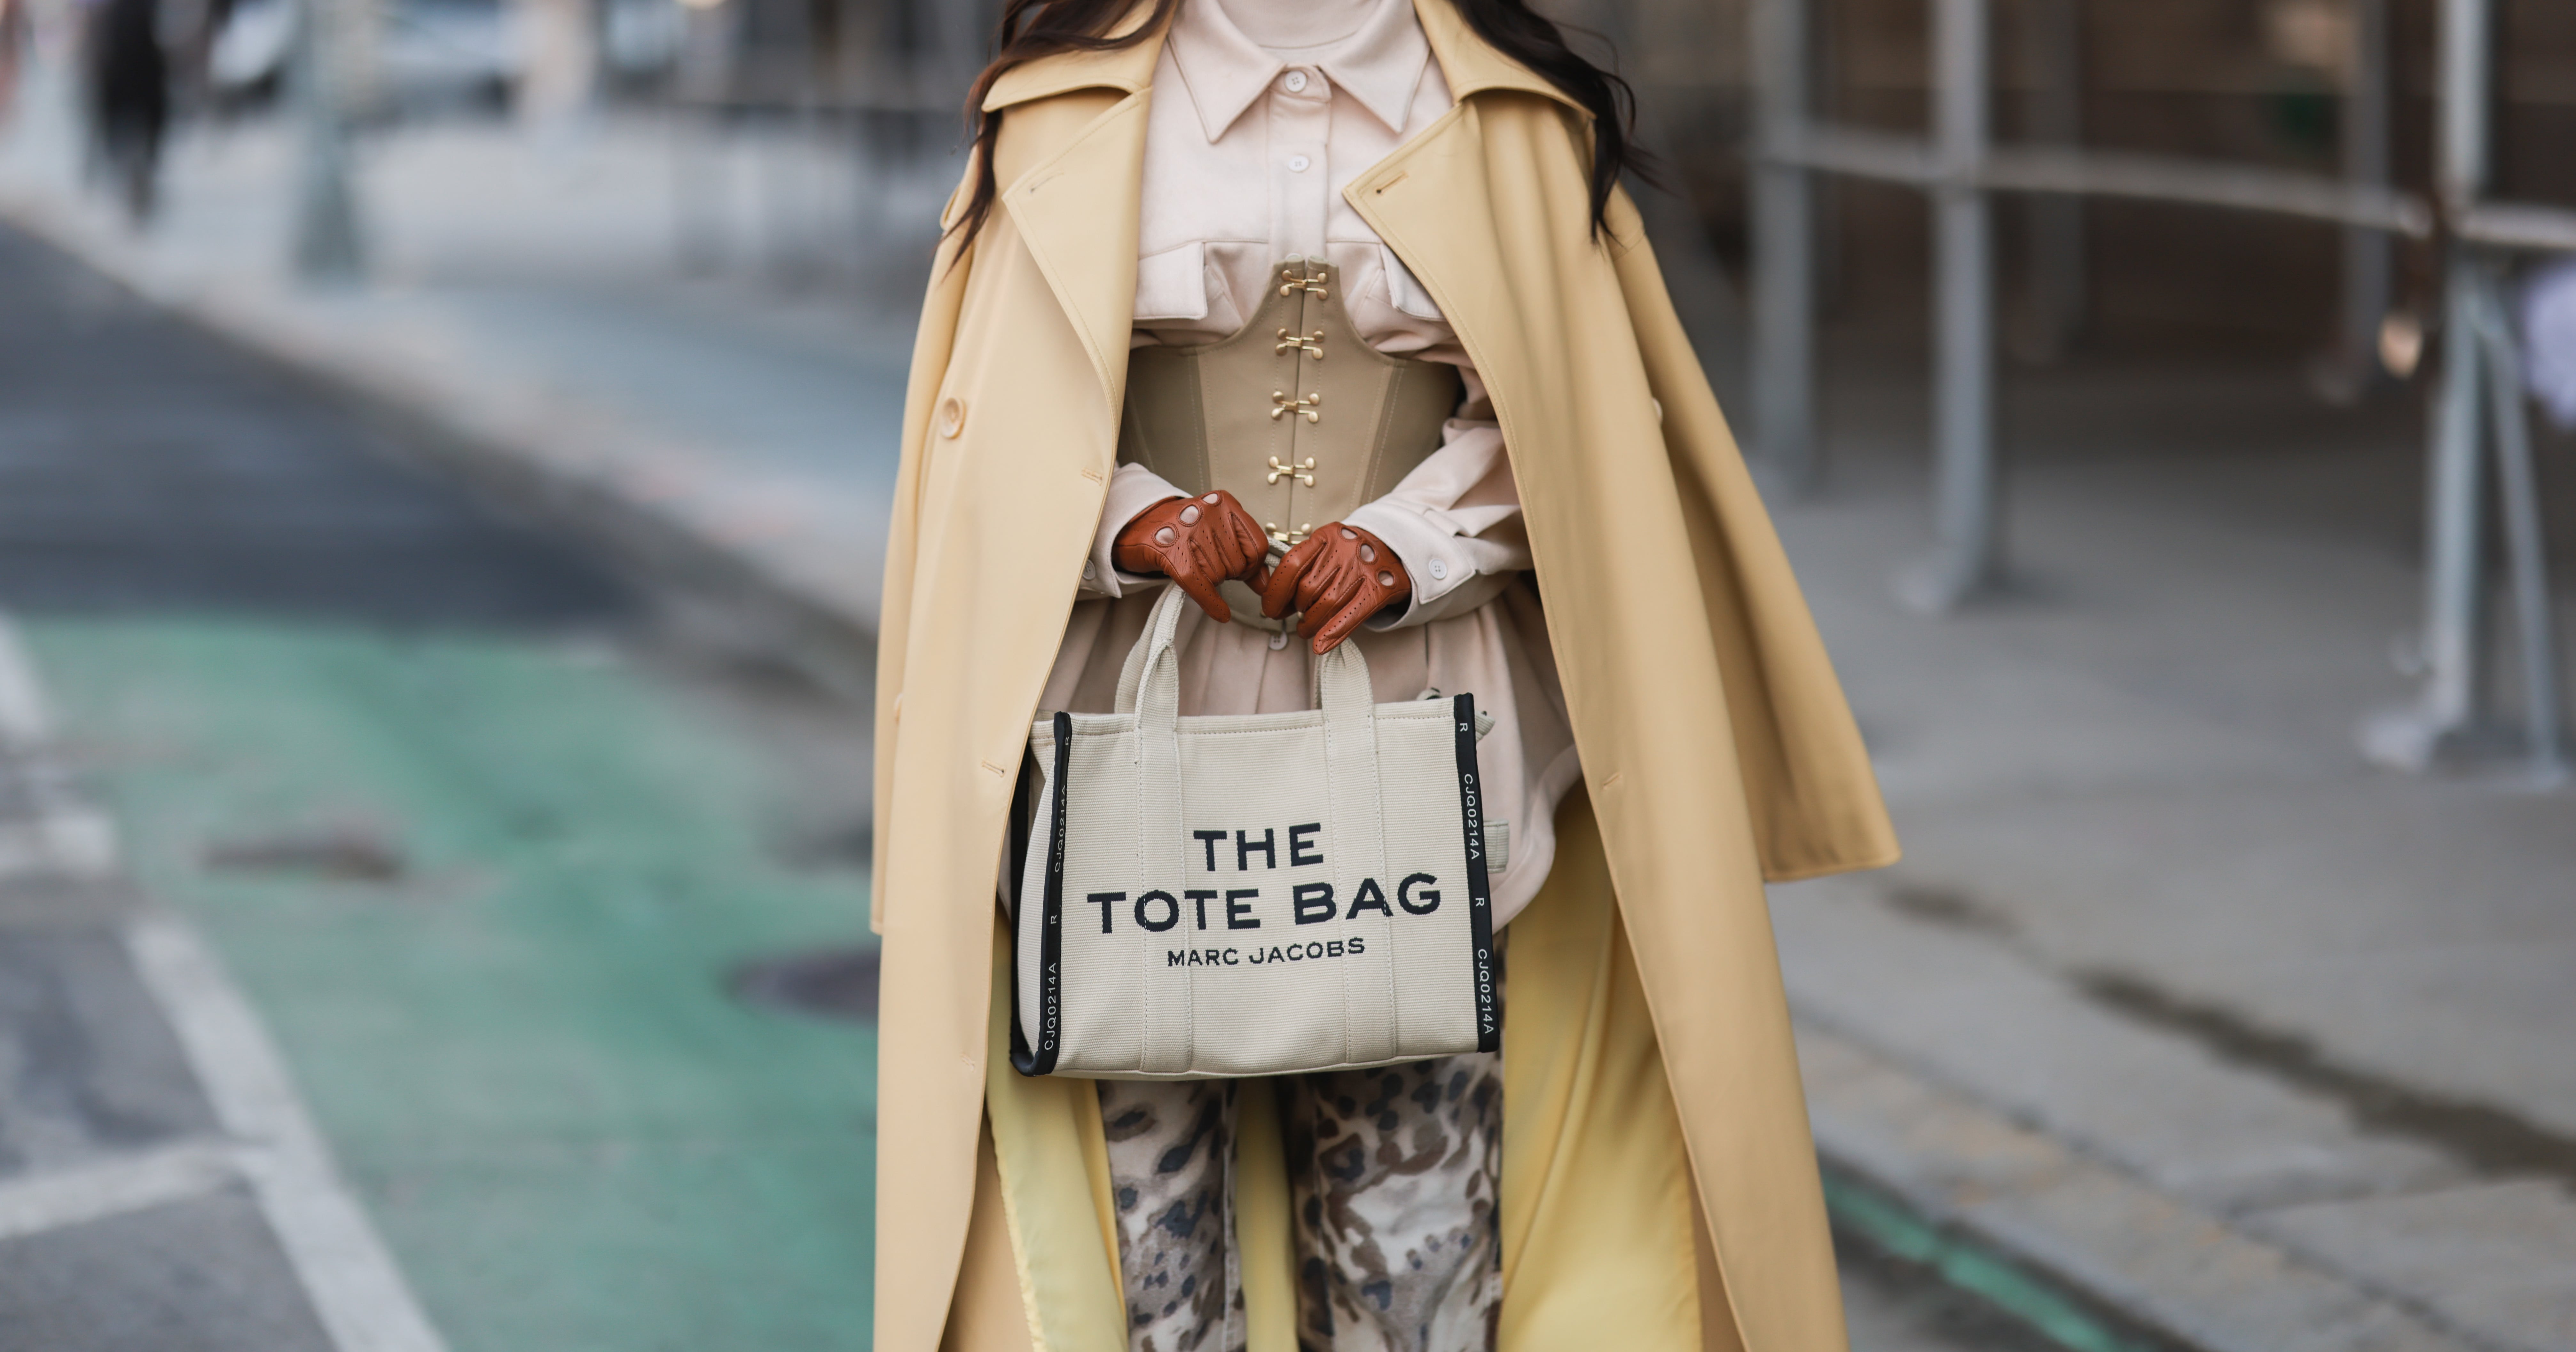 Retro Solid Color Ladies Handbags Women Fashion Designer Tote Bag